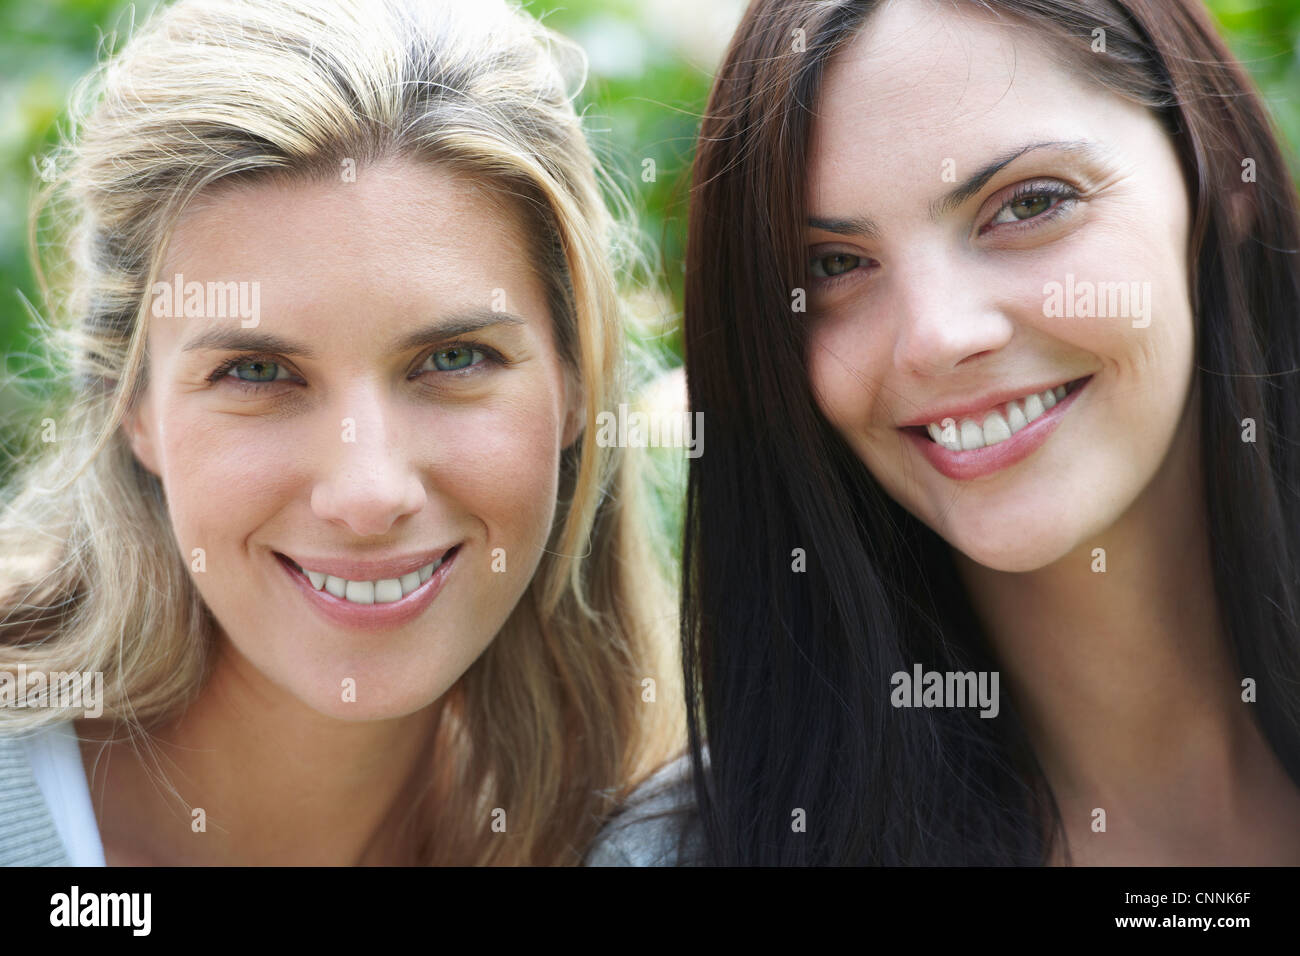 Nahaufnahme von lächelnden Gesichtern der Frauen Stockfoto